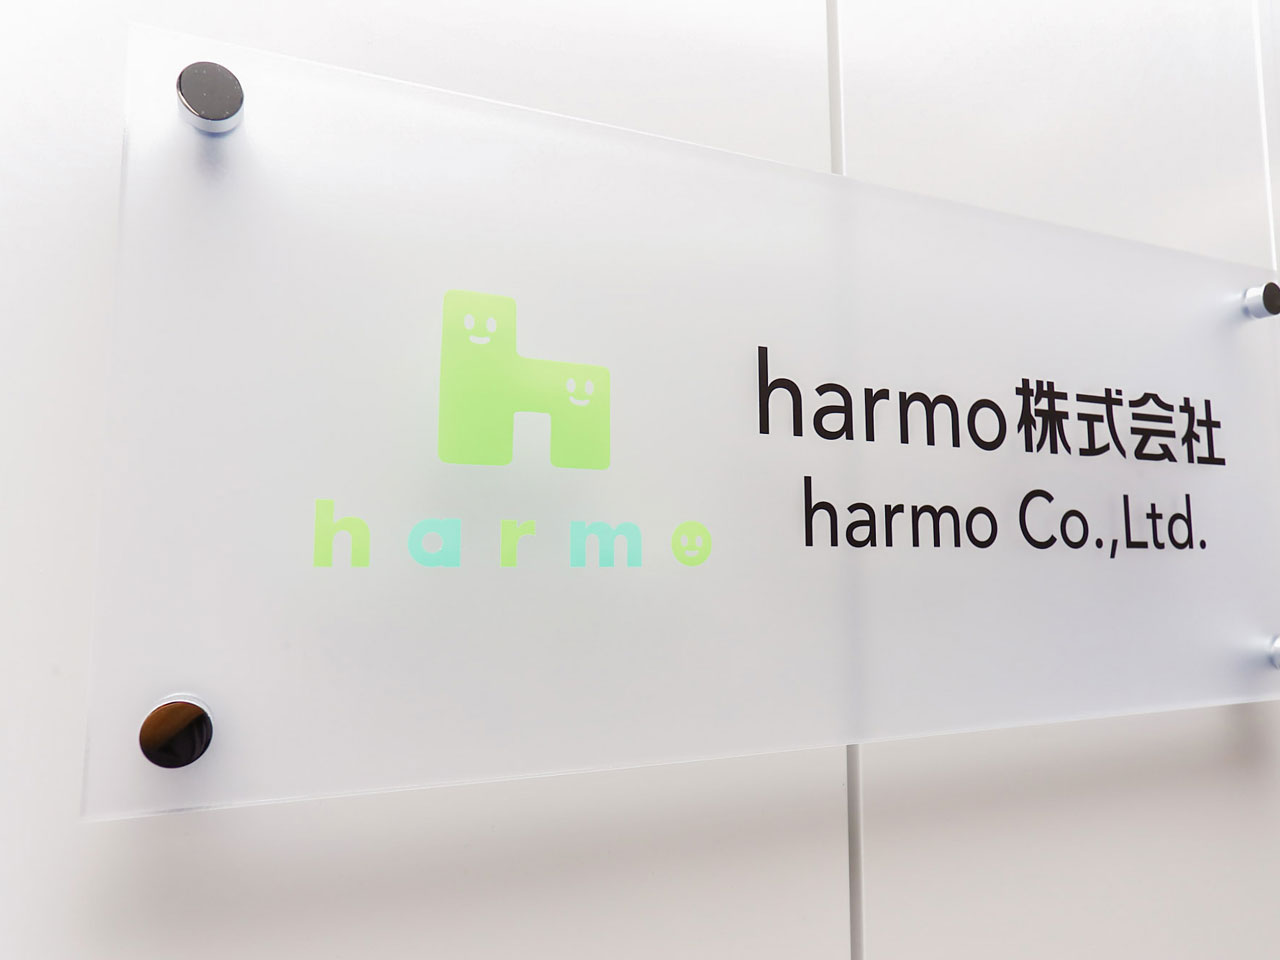 今回、グループ内で『harmo』の運営を担うharmo株式会社で、エンジニアの人員を増強。